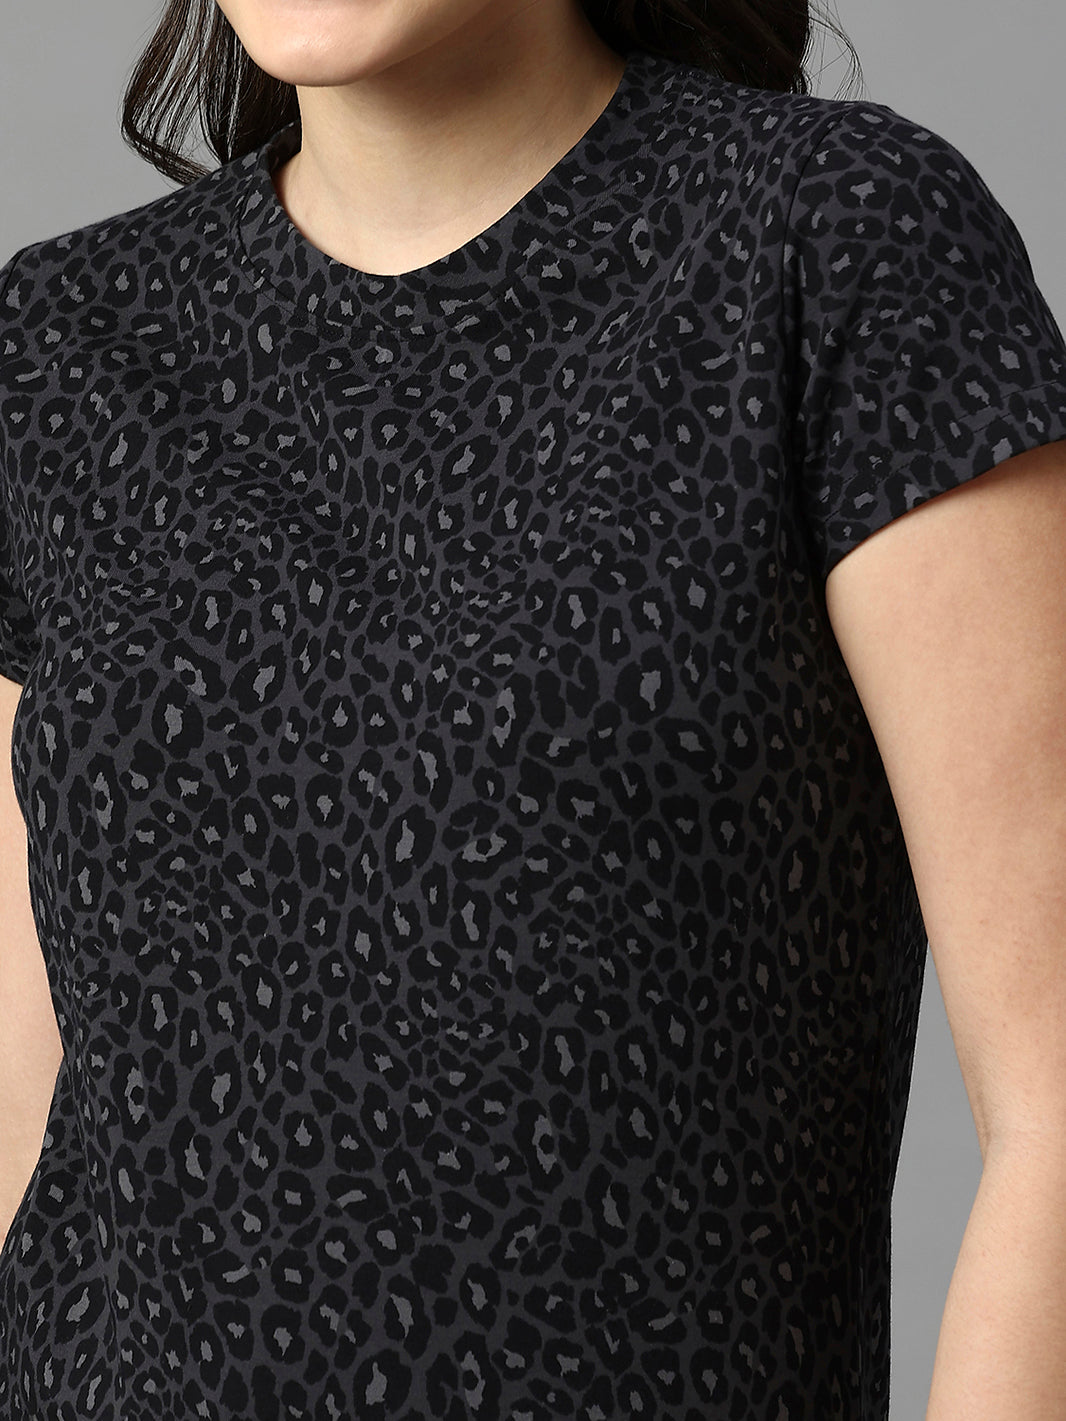 Women Leopard Print Black Graphic Nightwear